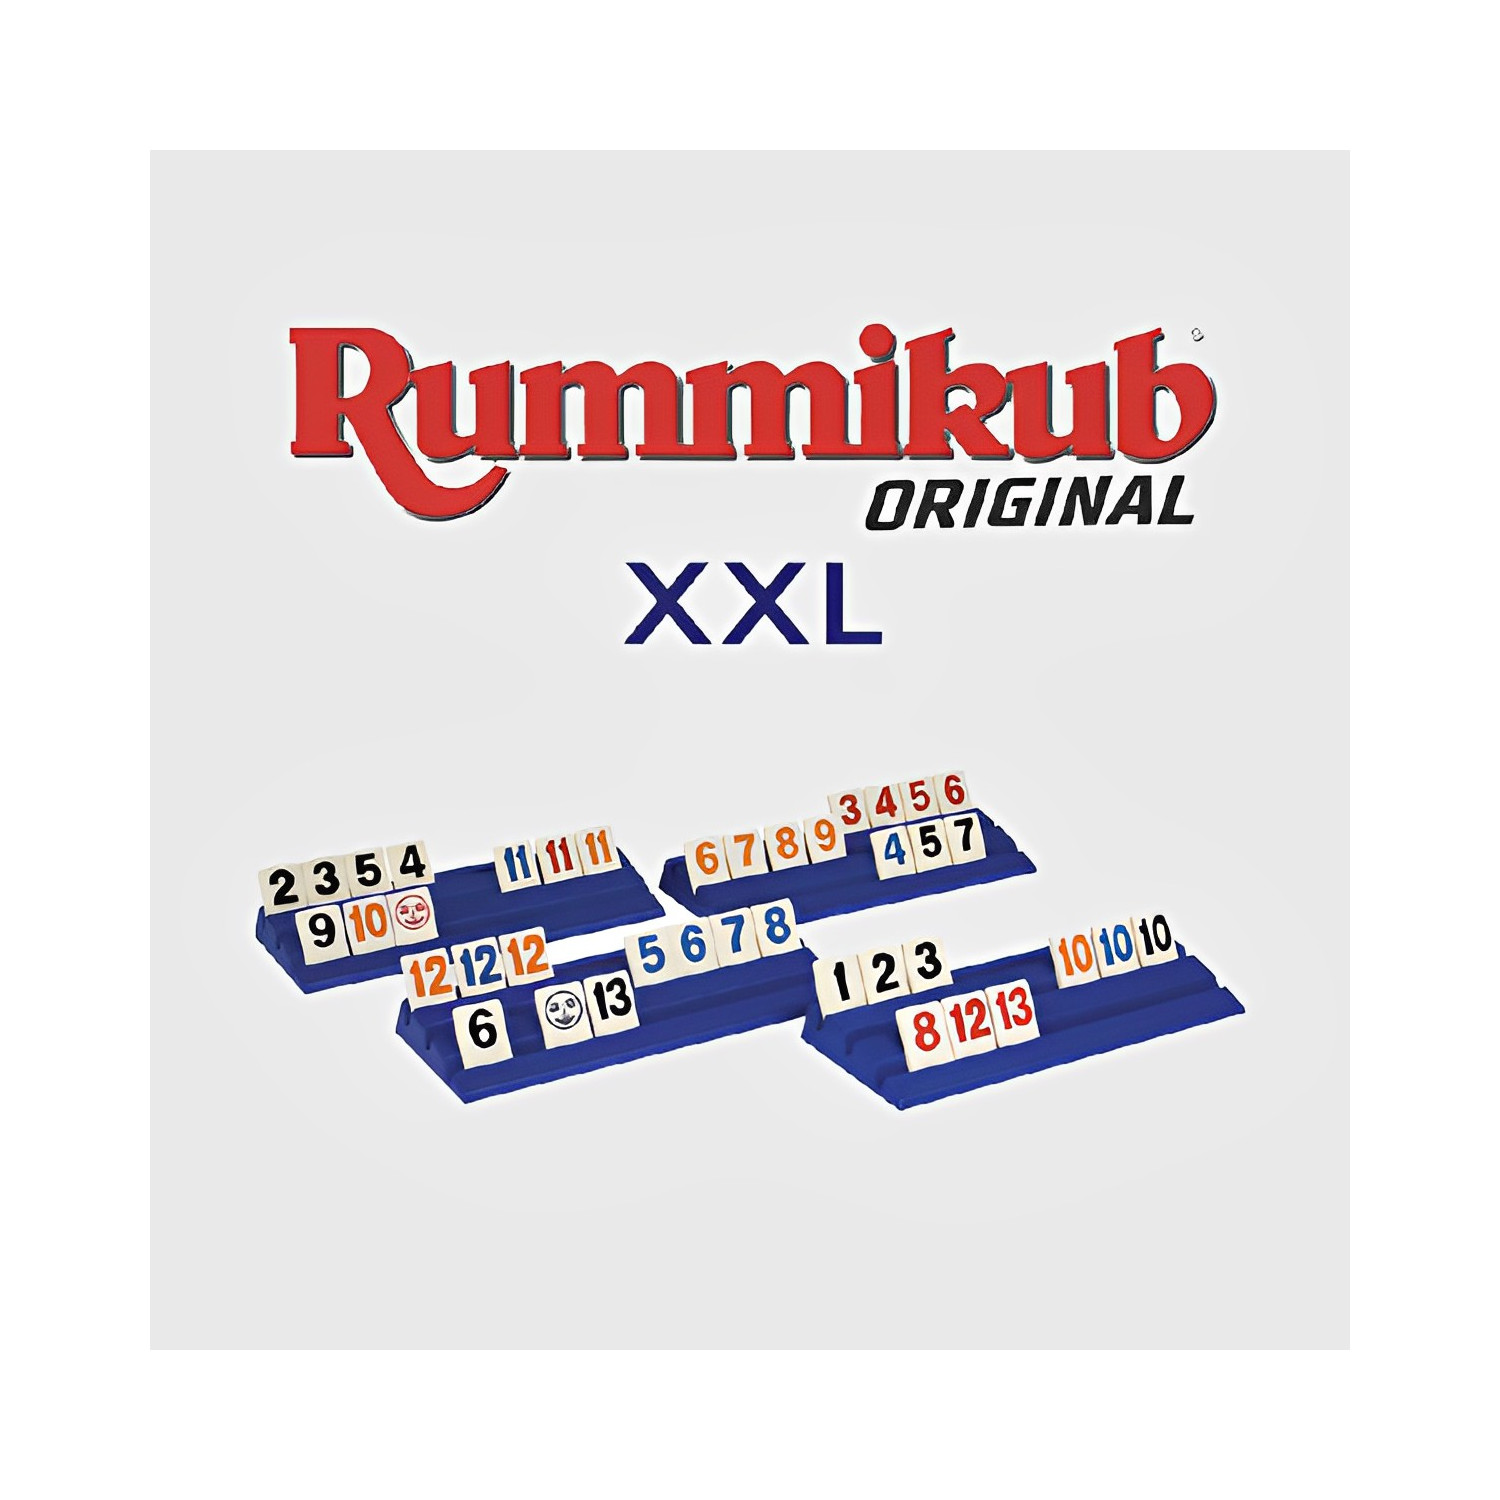 Découvrez Rummikub XXL : le jeu de stratégies accessible aux malvoyants